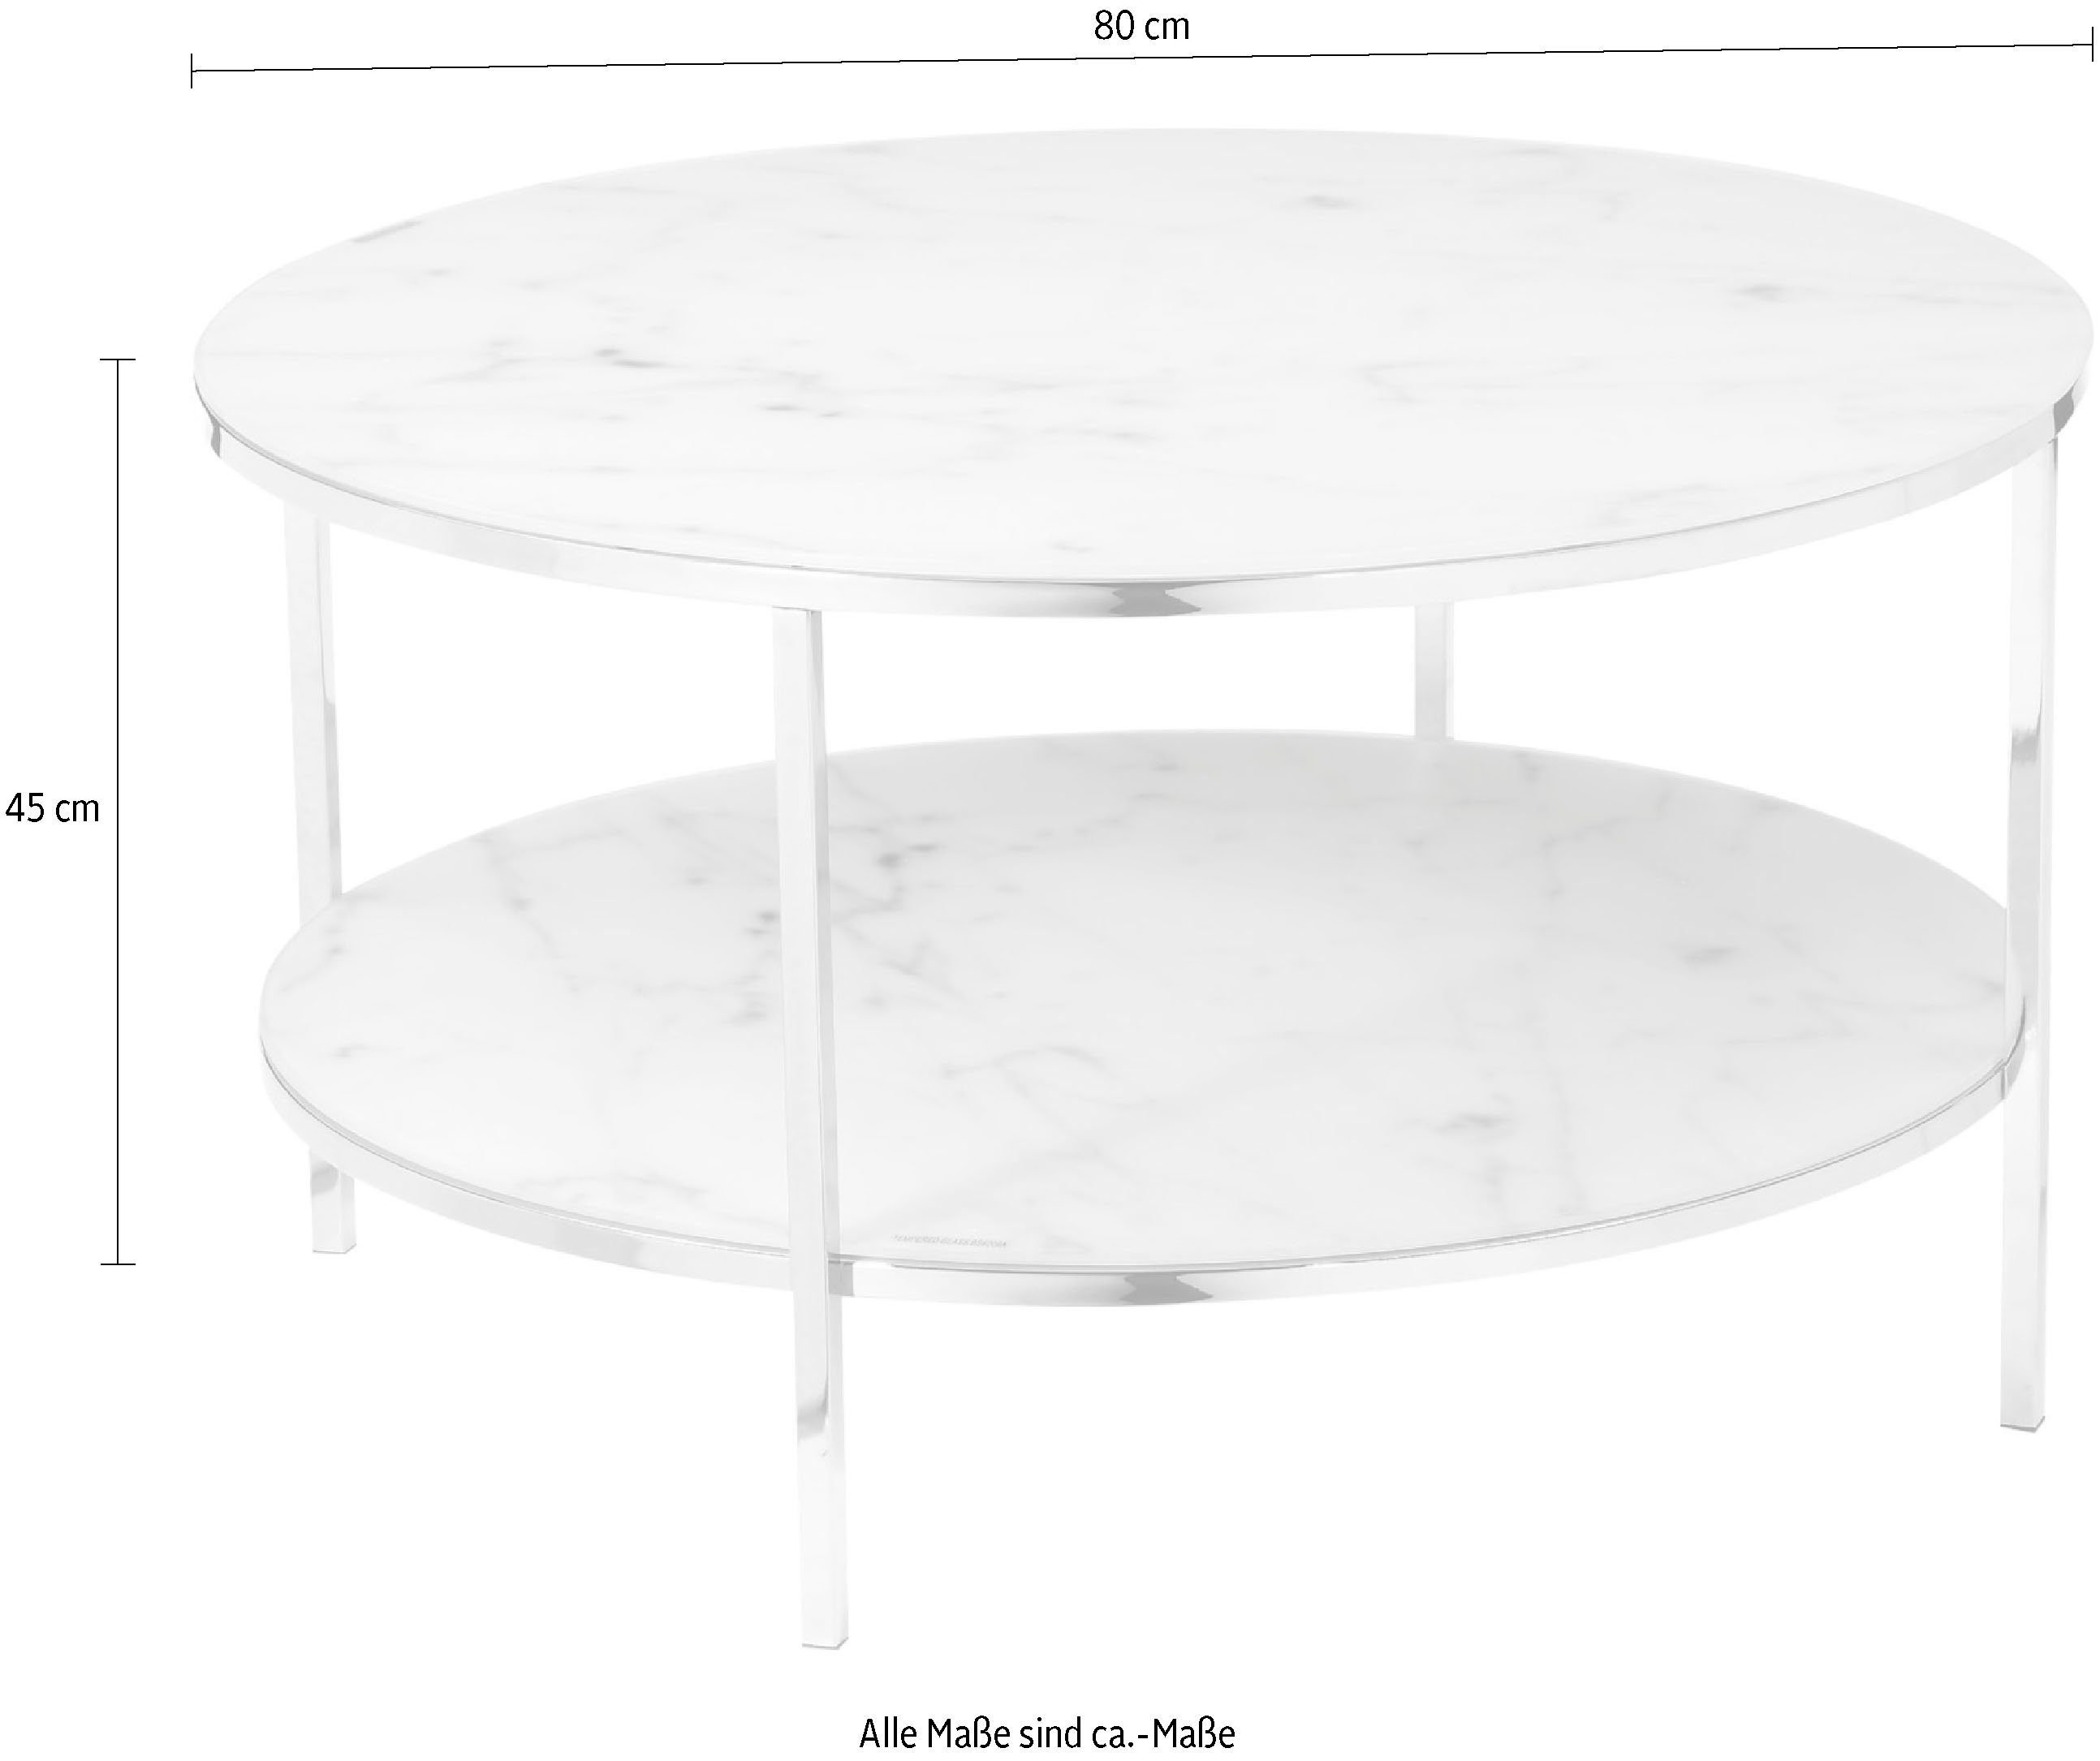 Tischplatten SalesFever Chromfarben Couchtisch, | in Weiß/Chromfarben Marmoroptik